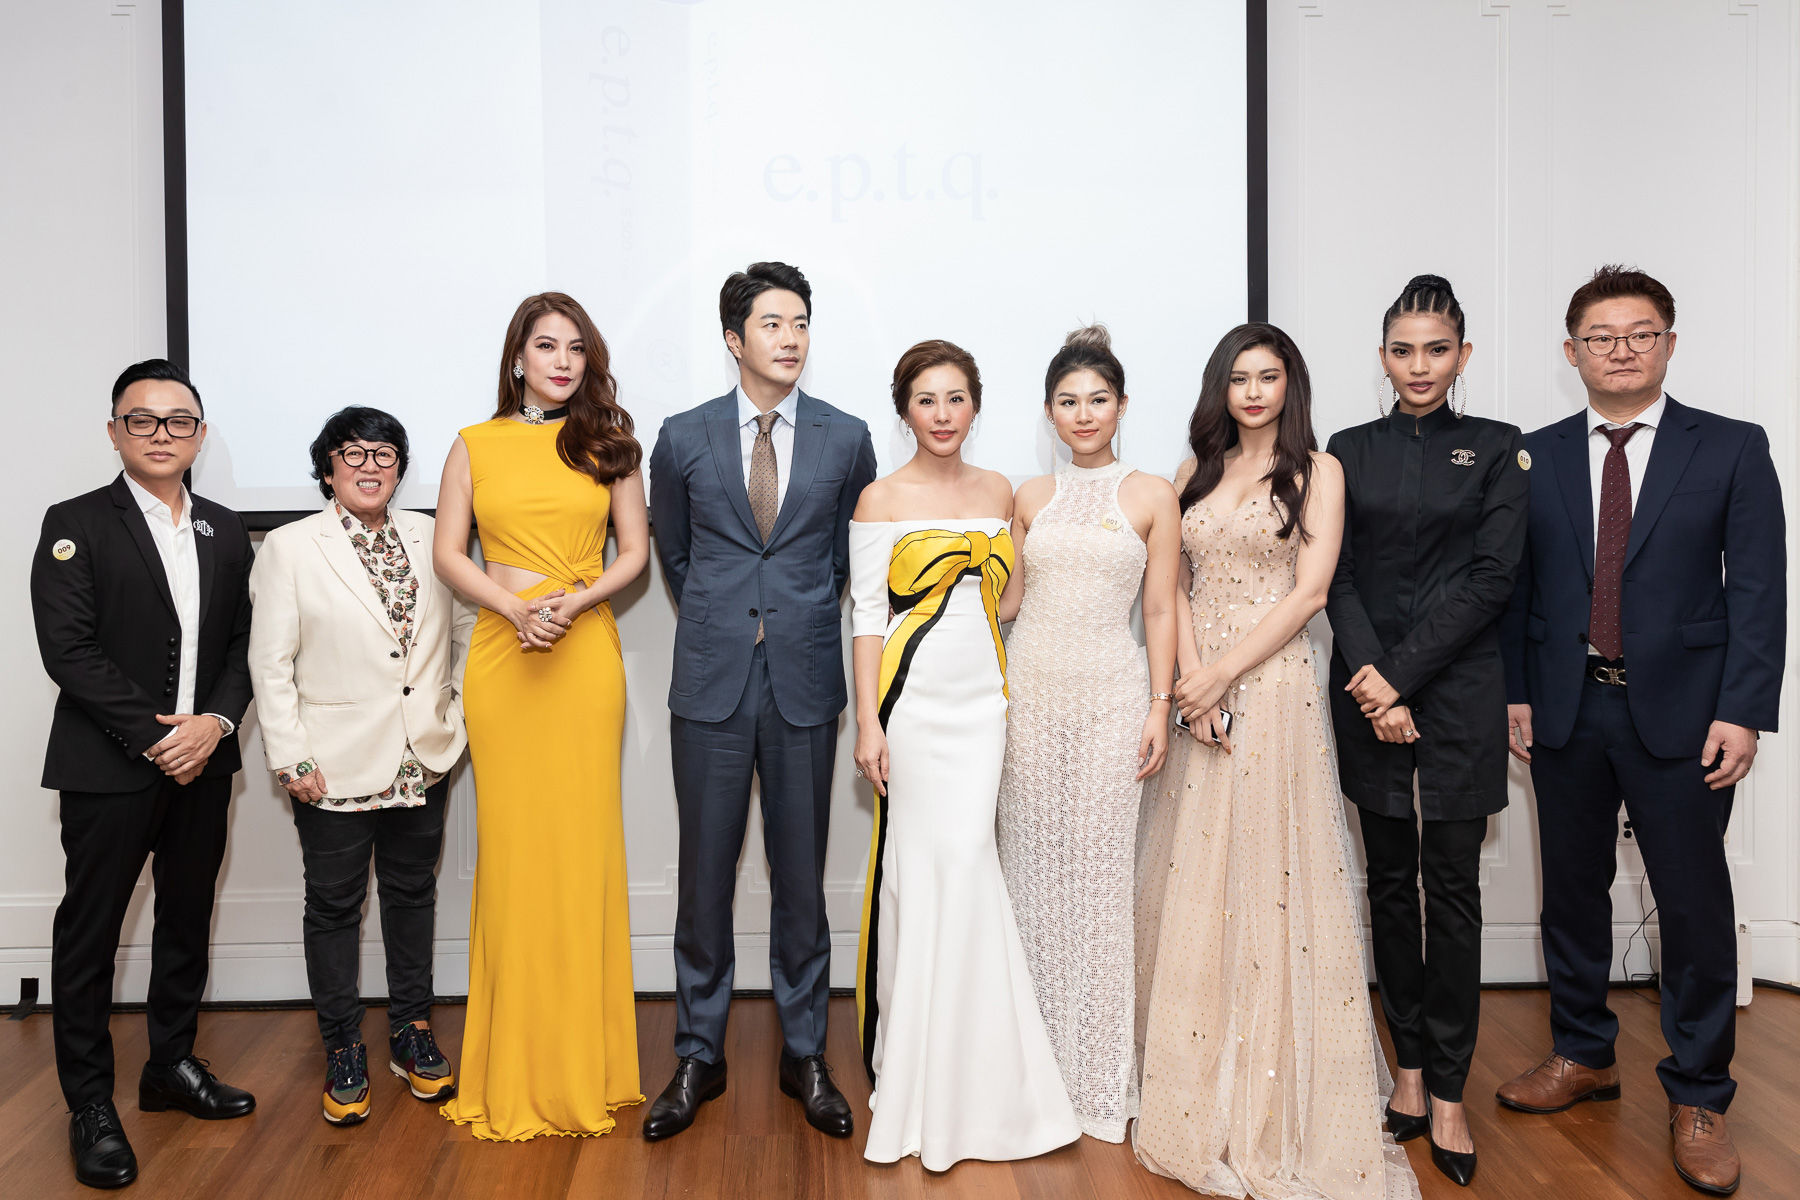 Ngoài khách mời đặc biệt Kwon Sang Woo, tham dự sự kiện “Night of Beauty” còn có sự góp mặt của gia đình, bạn bè, nhiều khách mời đặc biệt và hơn 100 nghệ sĩ nổi tiếng ở nhiều lĩnh vực khác nhau.